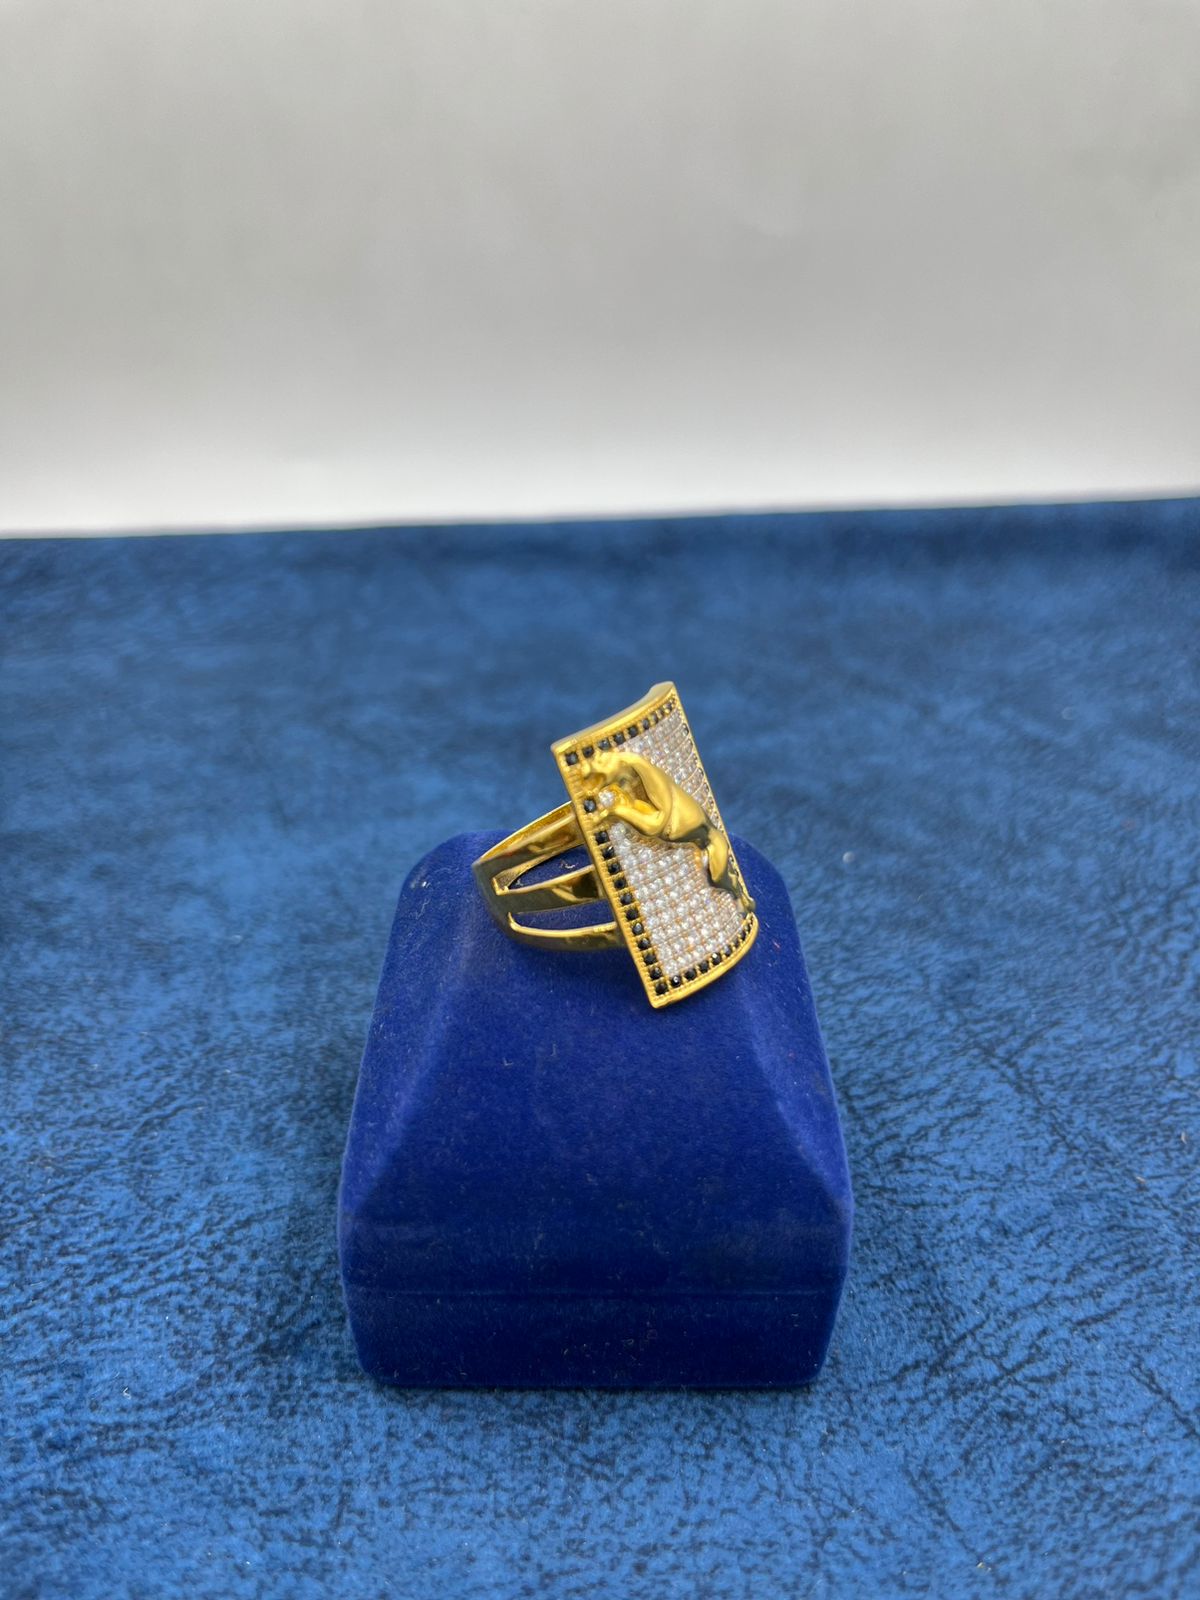 1 Gram Gold Forming Jaguar Best Quality Elegant Design Ring For Men - Style  A664 at Rs 1100.00 | Men Gold Ring | ID: 26090406612